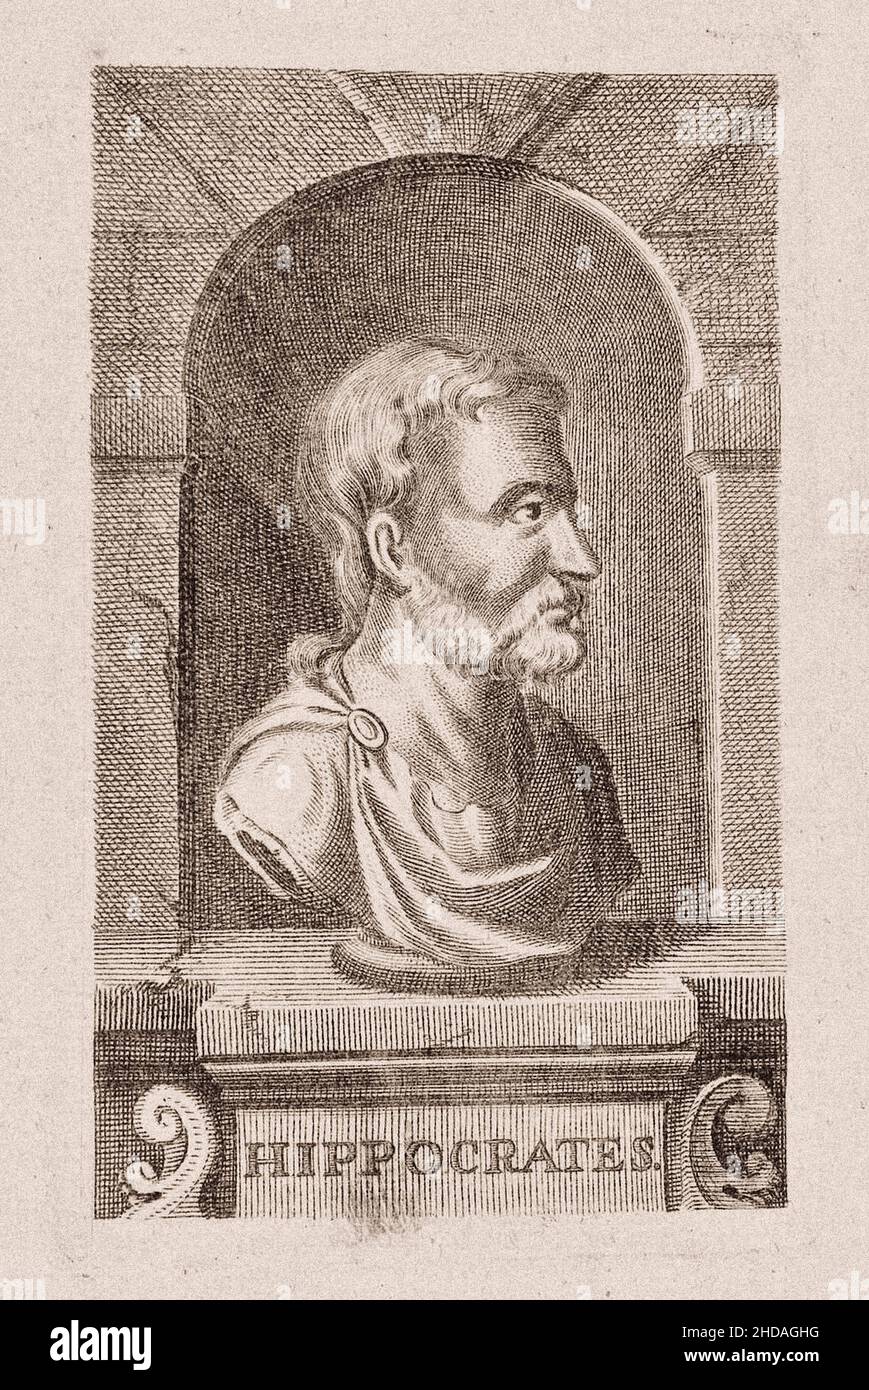 La gravure du 17th siècle de Hippocrate de Kos.Hippocrate de Kos (c.460 – c.370 BC), également connu sous le nom d'Hippocrate II, était un médecin grec de la Banque D'Images